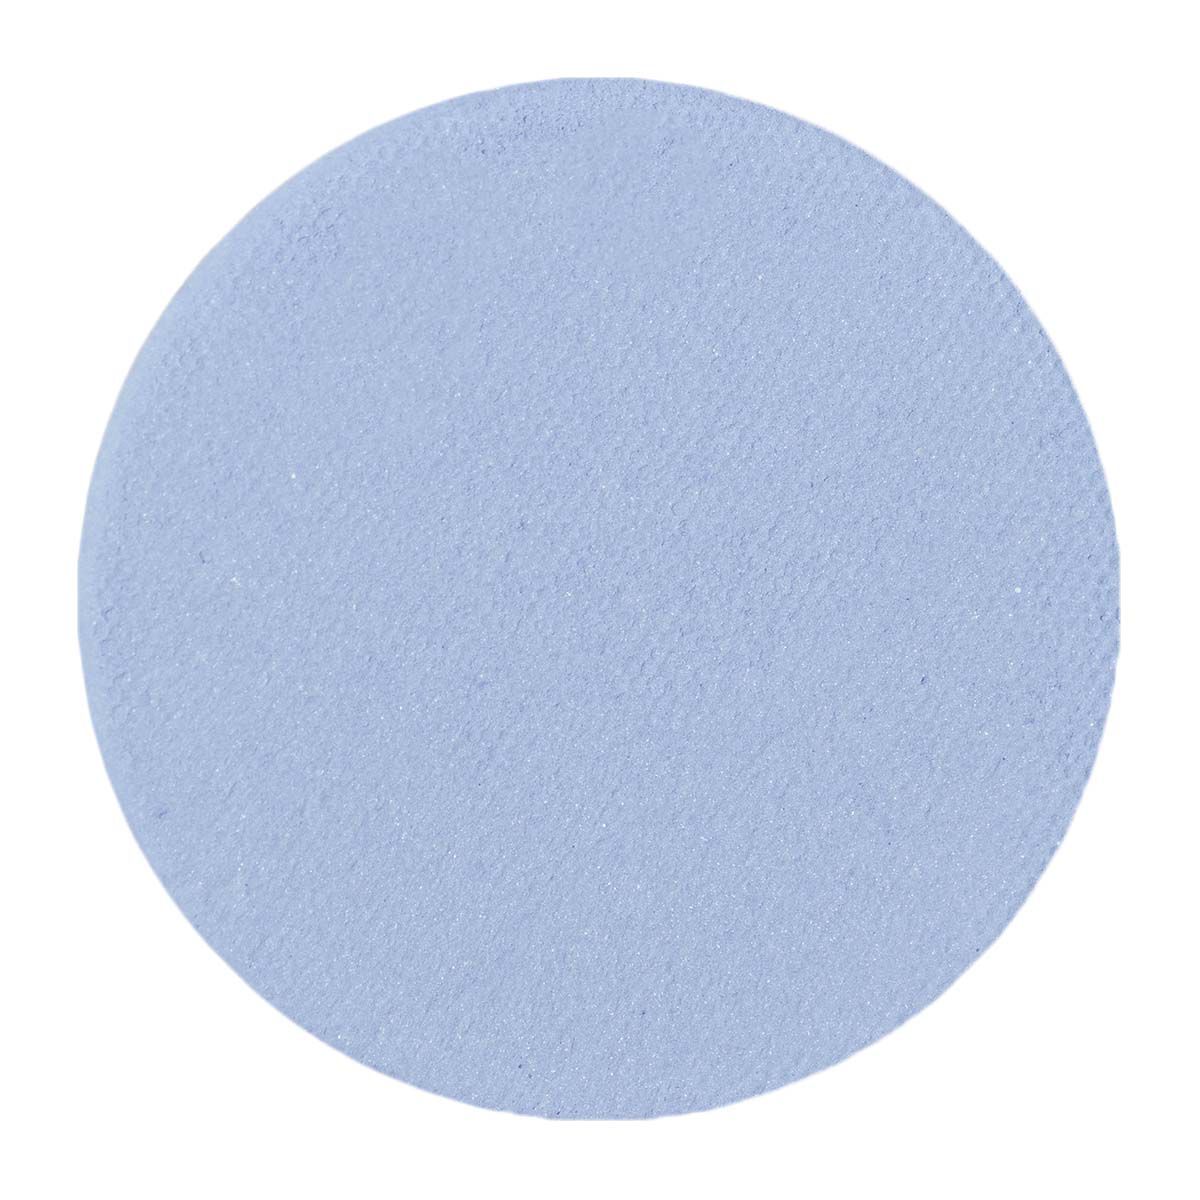 Сменный блок: матовые голубые тени для век Glam Shop, 1,8 гр